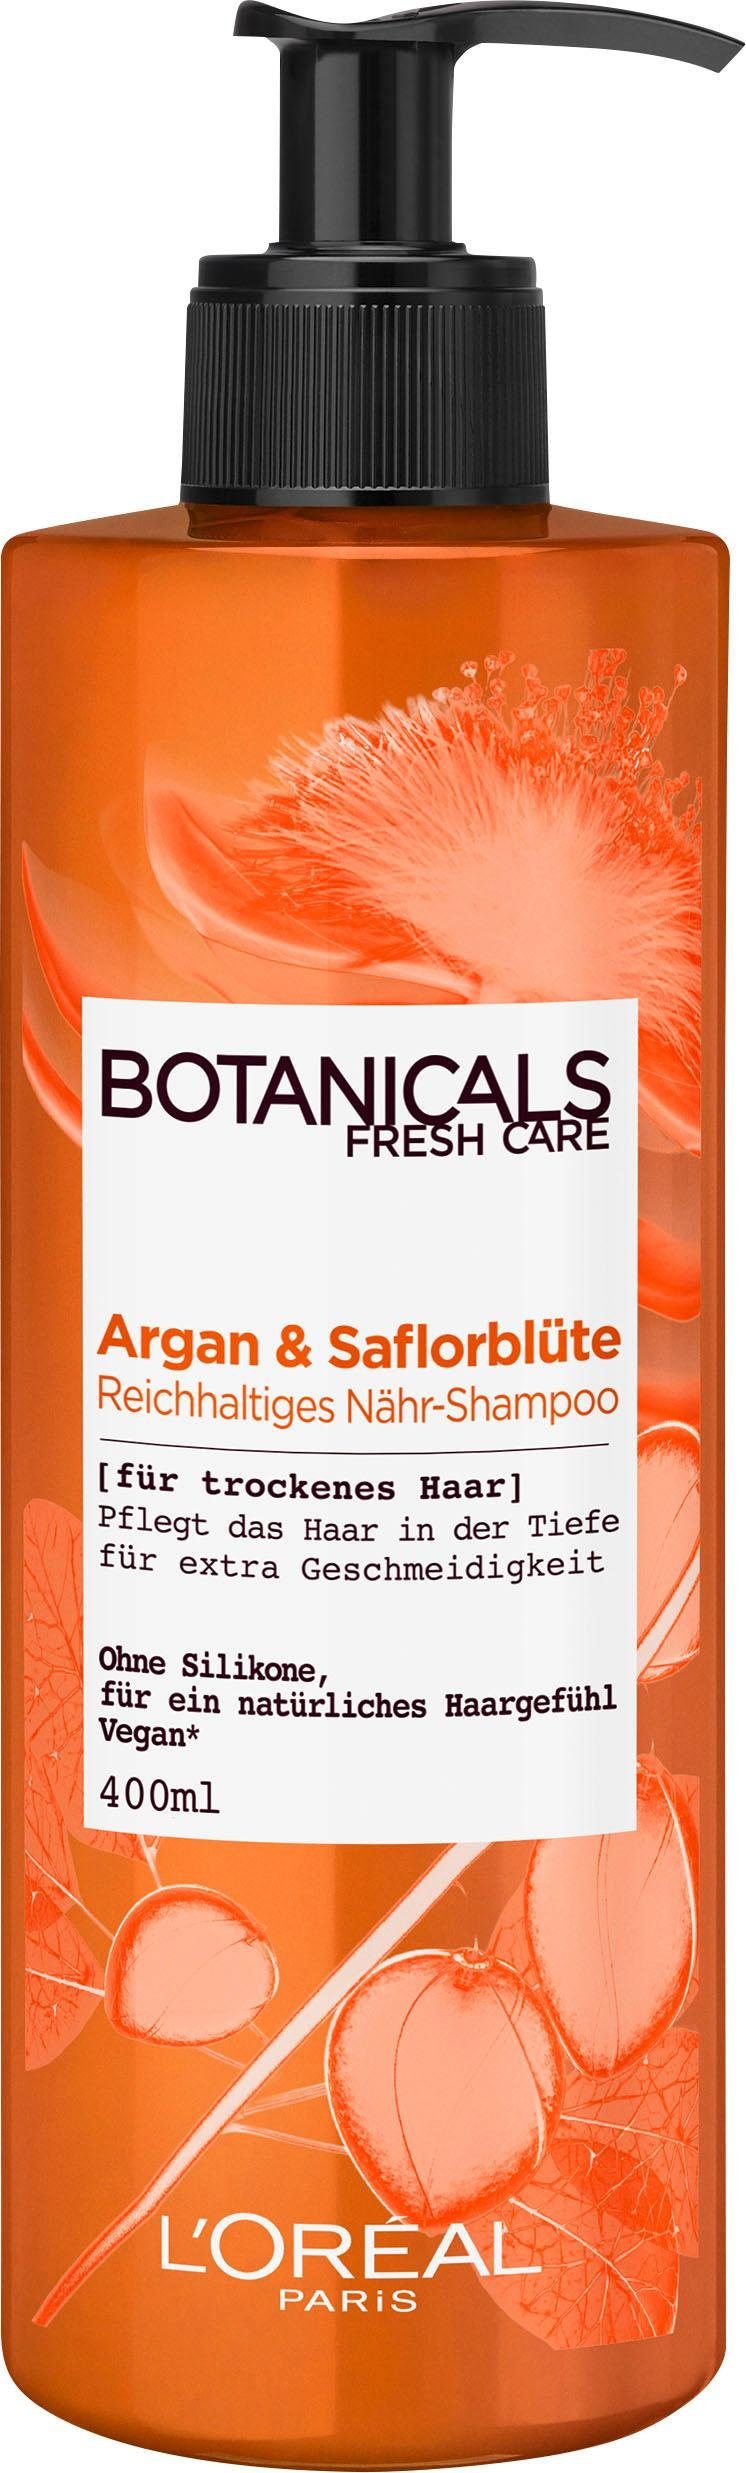 BOTANICALS Haarshampoo Argan und Saflorblüte, reichhaltig